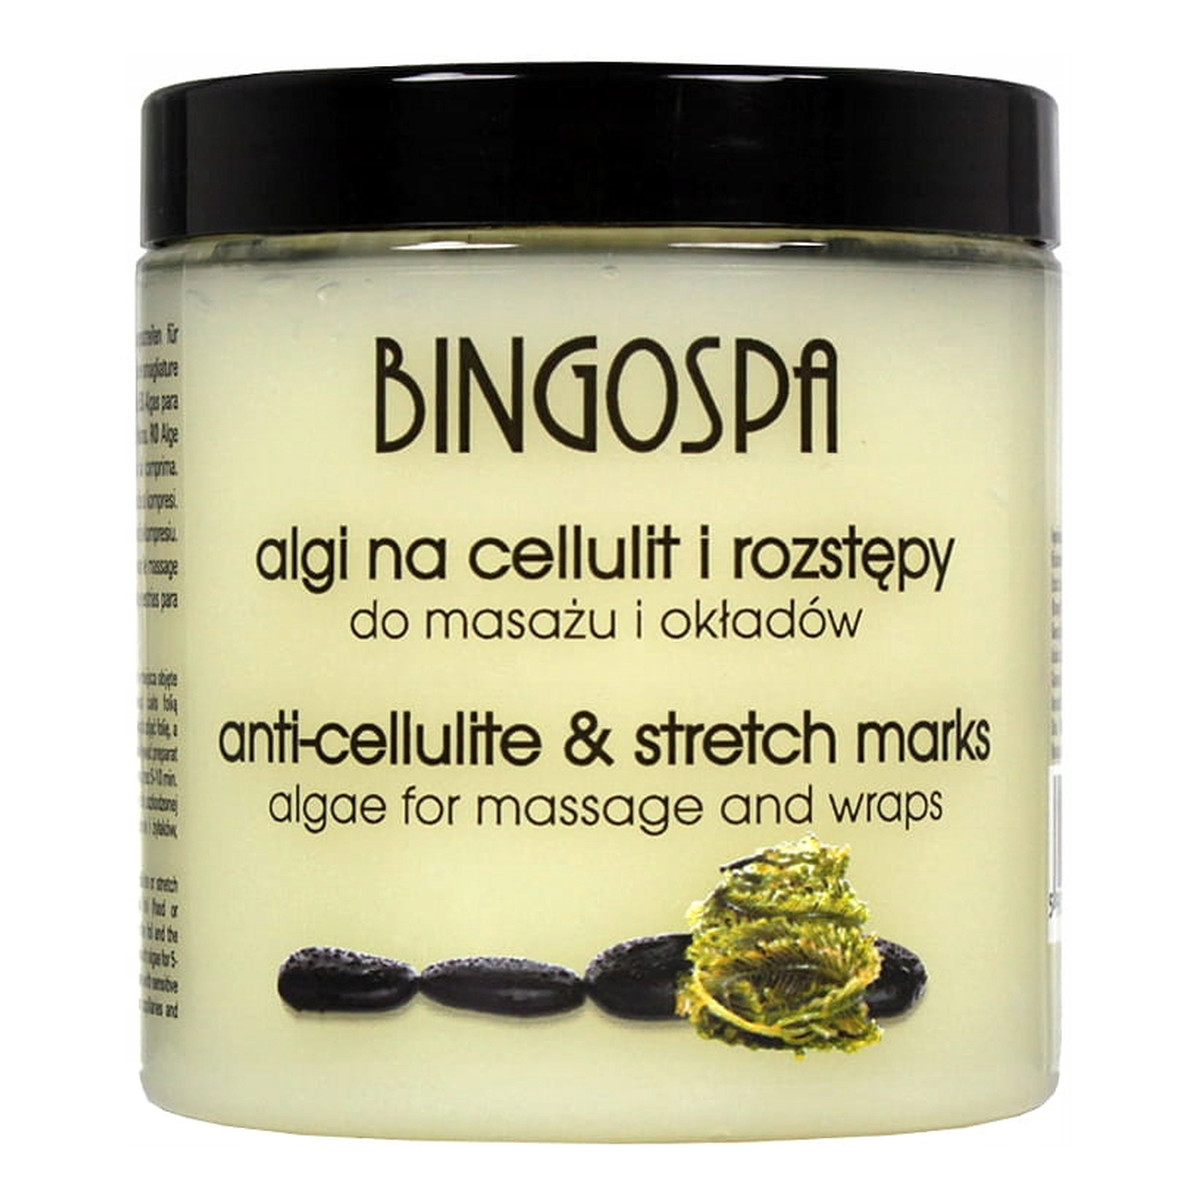 BingoSpa Algi na cellulit i rozstępy - do masażu okładów 250g